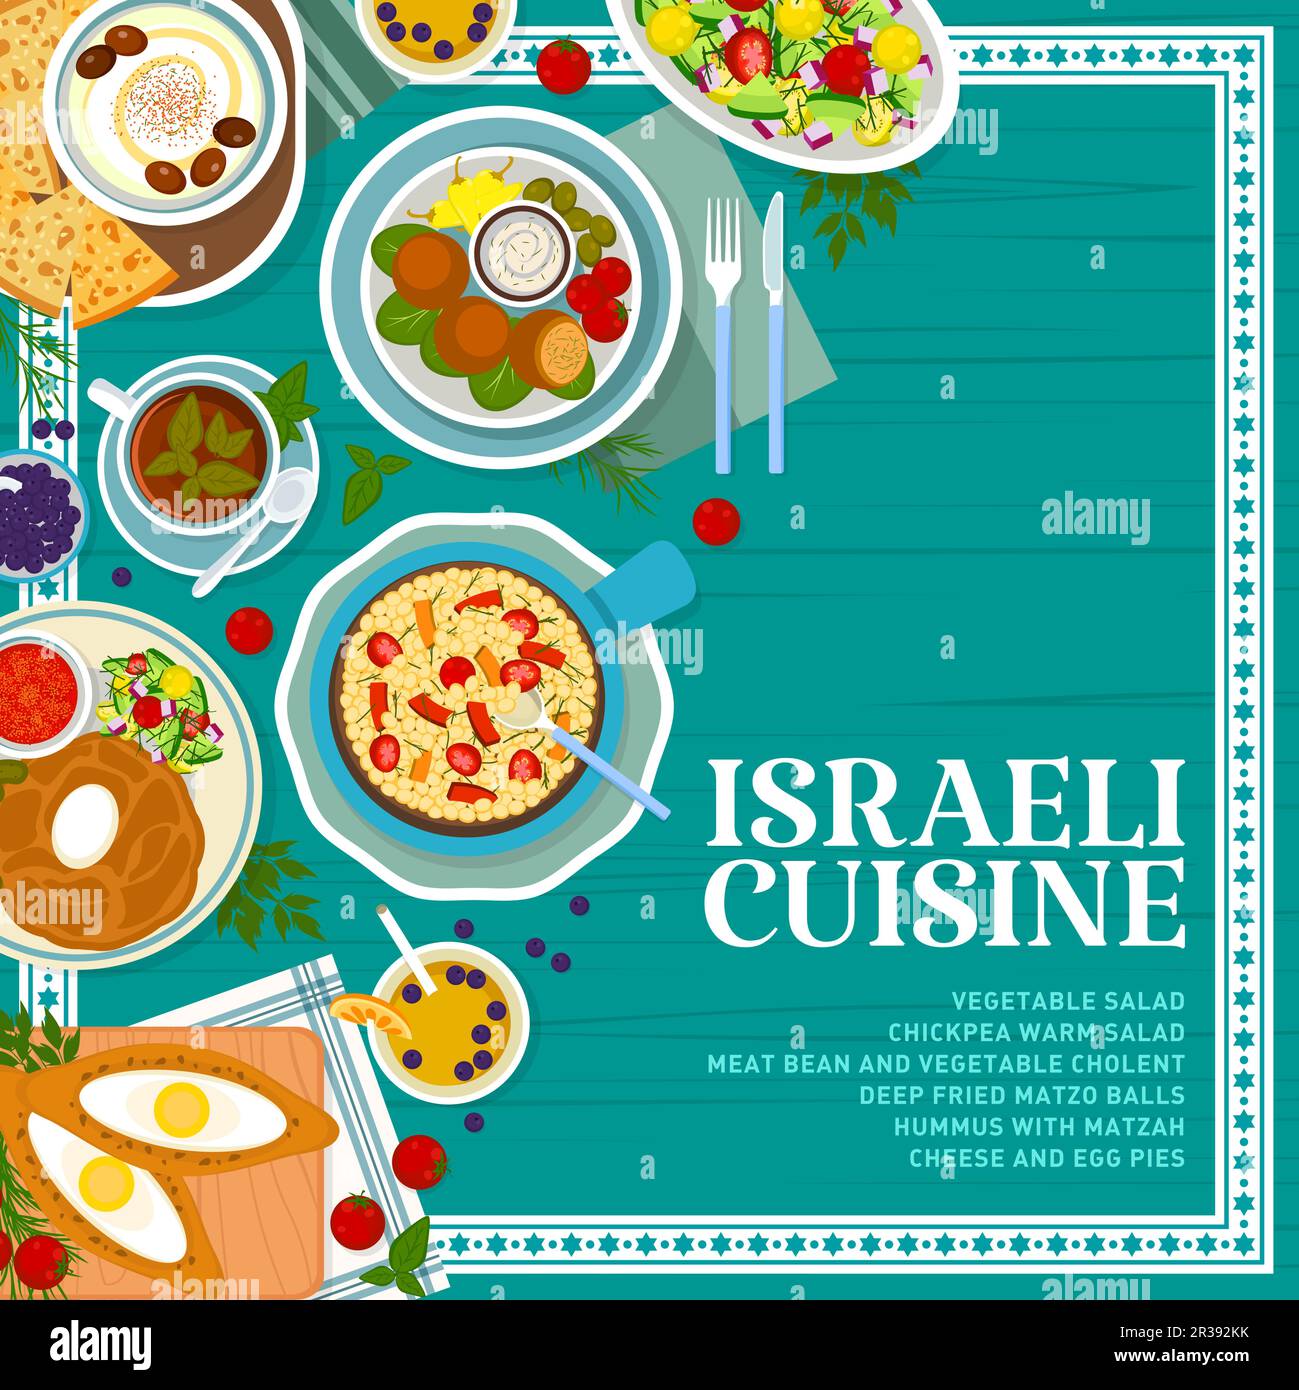 Modello di copertina del menu dei pasti della cucina israeliana. Torte di formaggio e uova, palle di matzo fritte e cholent di fagioli di carne e verdure, hummus con matzah, insalata di verdure e ceci, limonata, tè nero Illustrazione Vettoriale